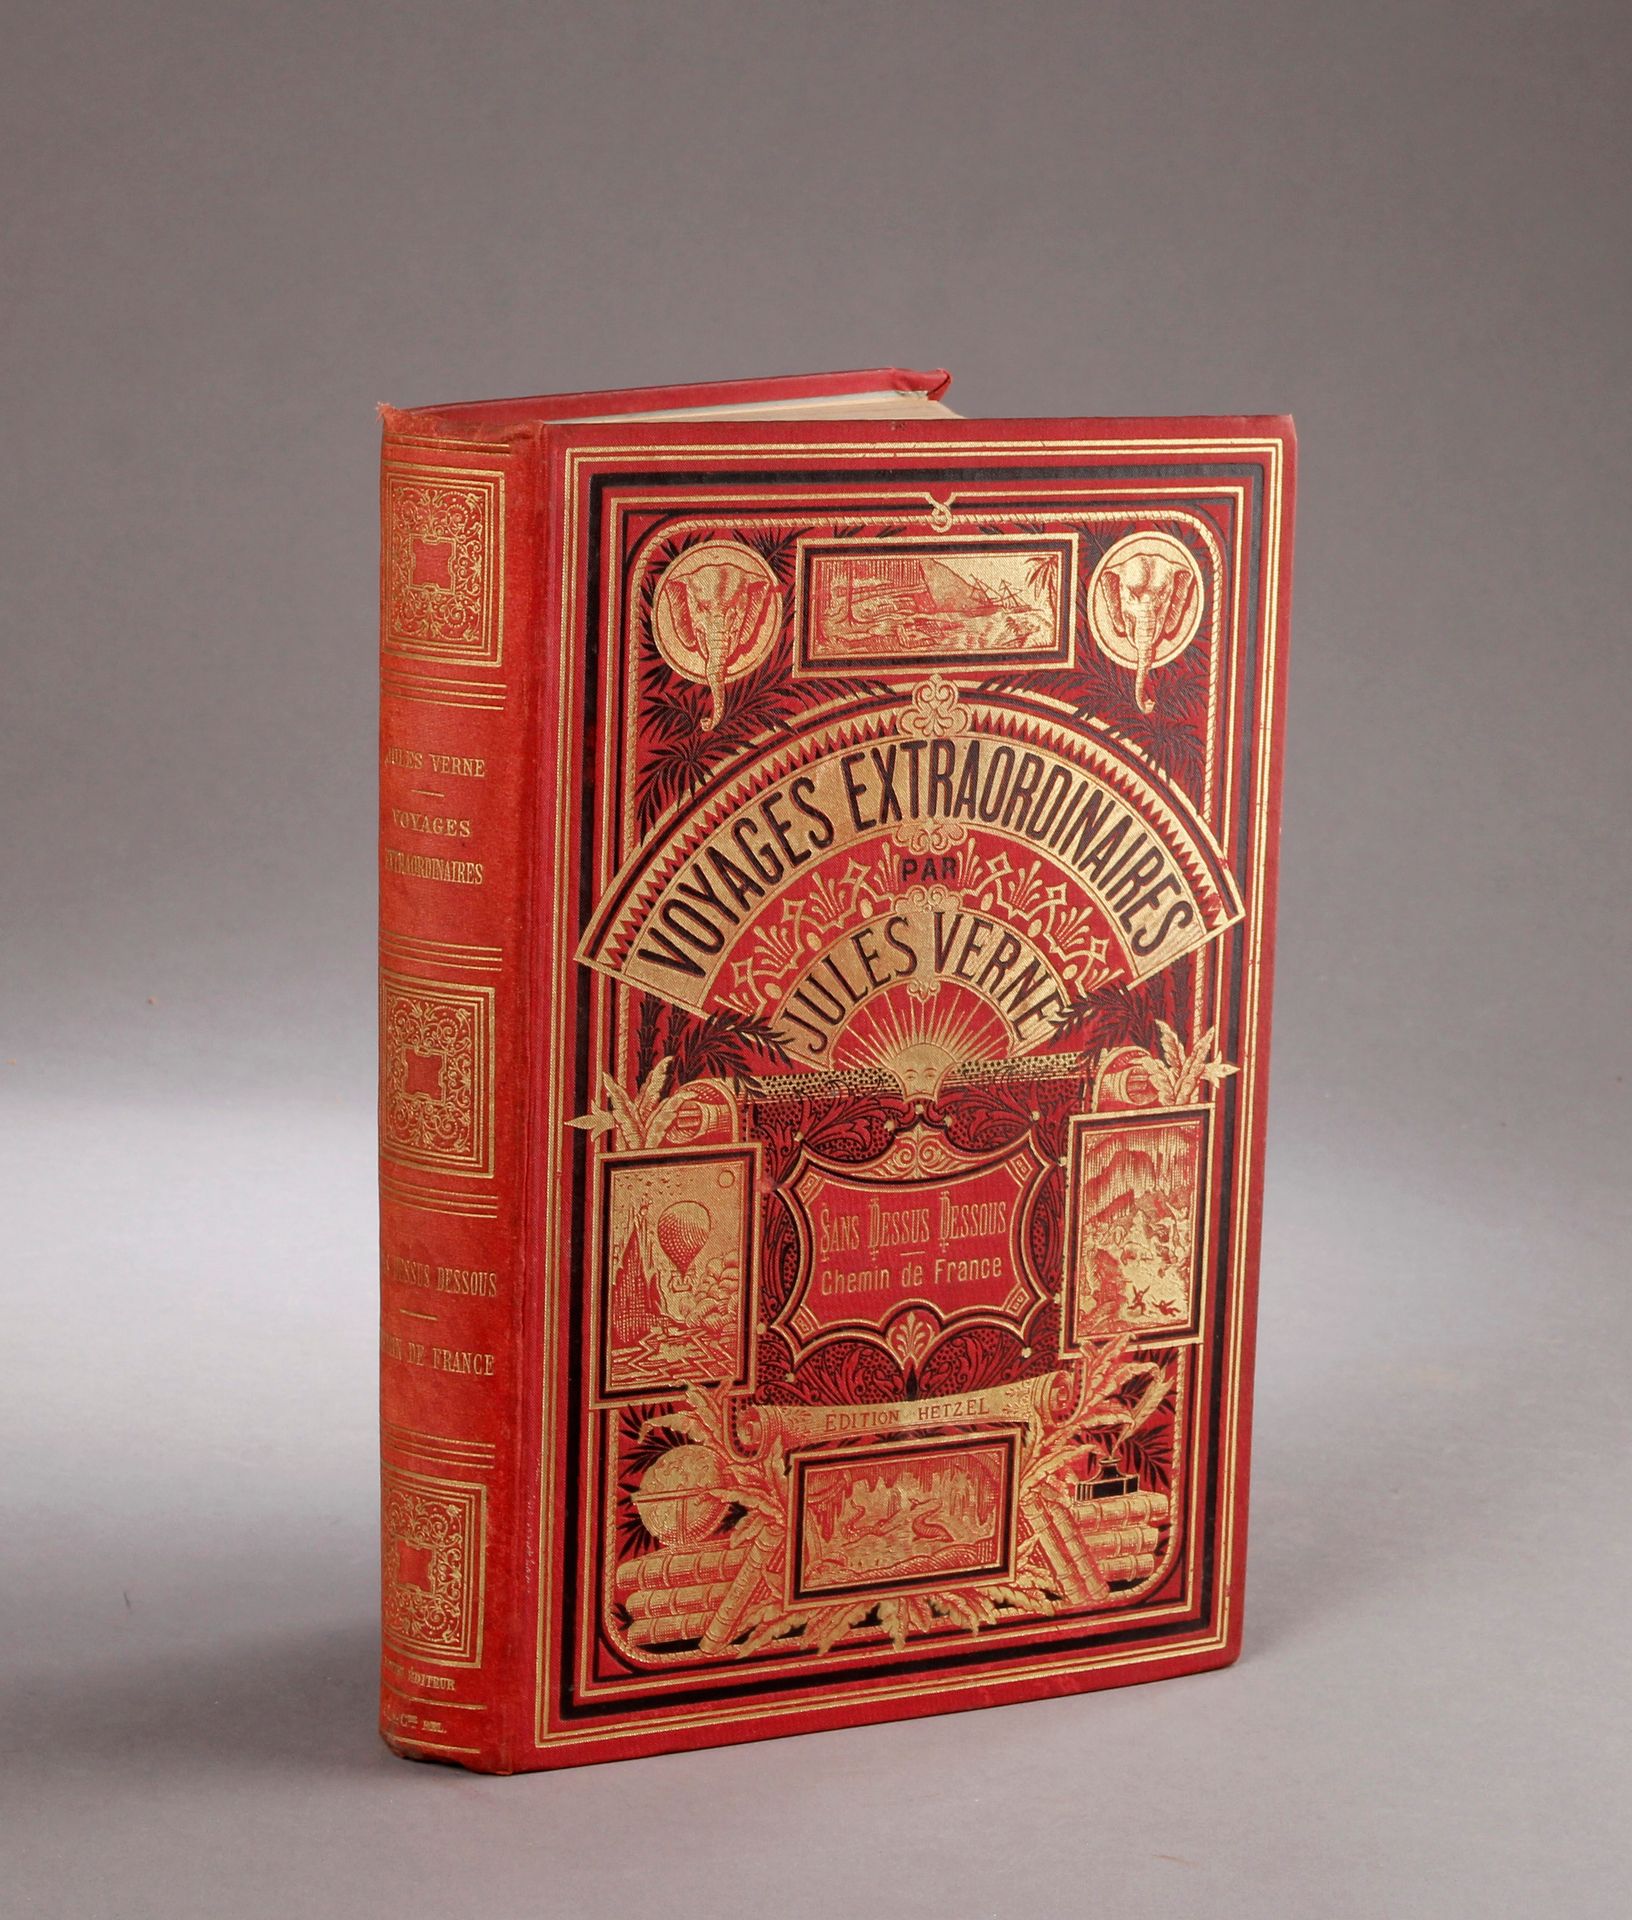 Jules VERNE / HETZEL. Underside. Chemin de France (1889). Double volume. Red car&hellip;